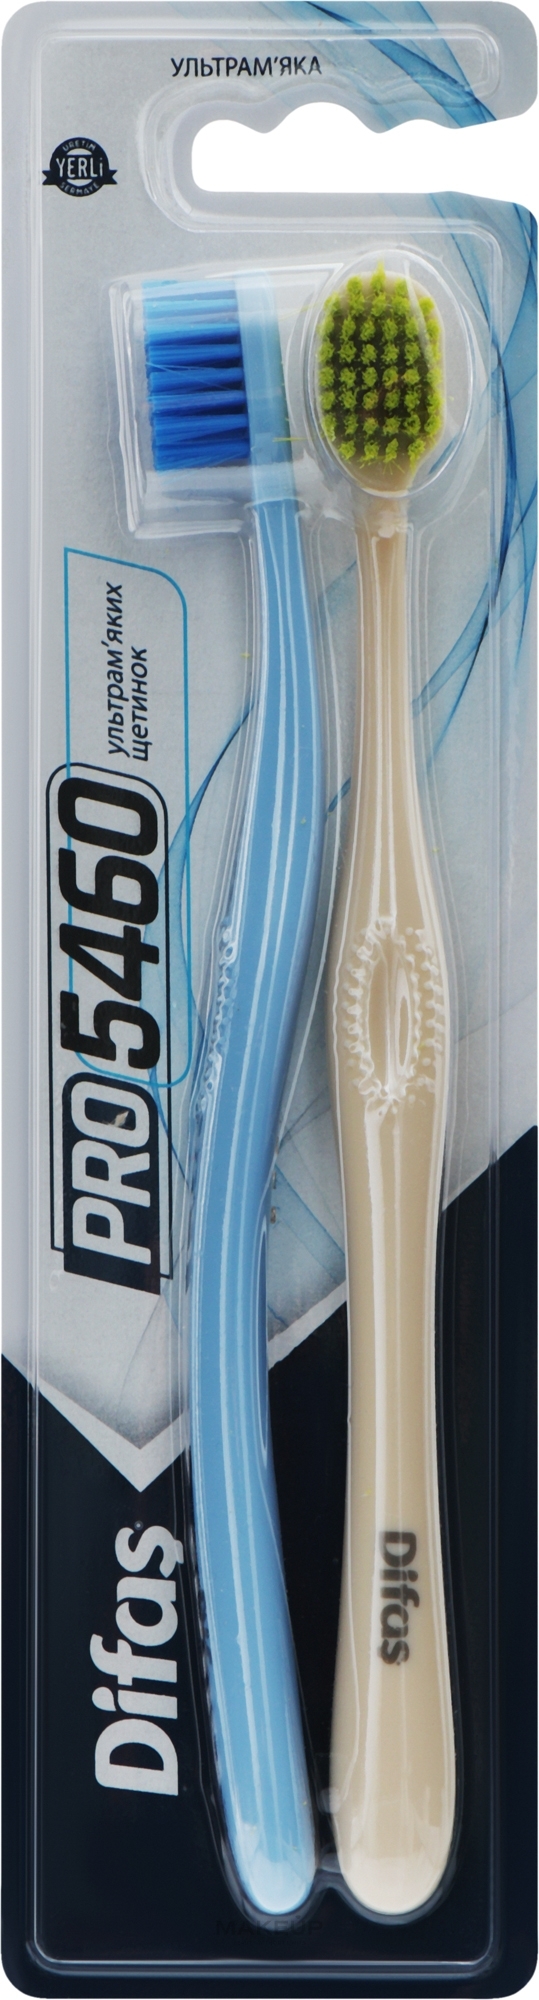 Набір зубних щіток "Ultra Soft", бежева + блакитна - Difas PRO 5460 — фото 2шт